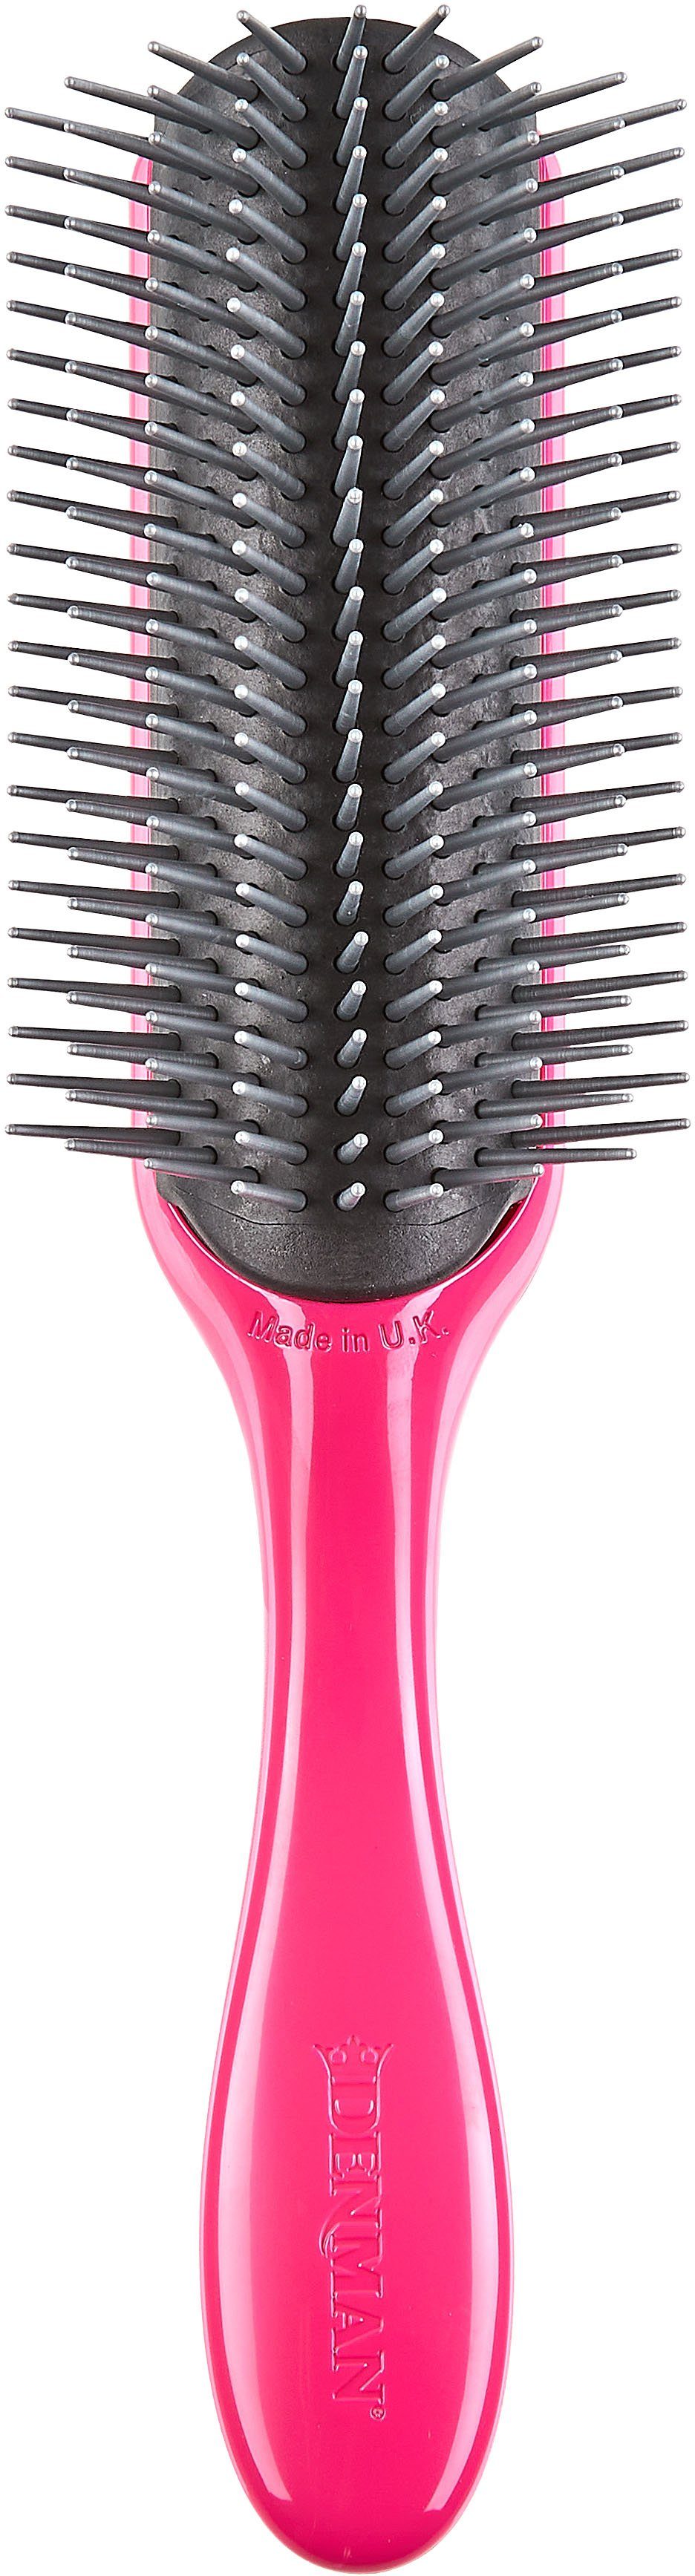 DENMAN Stylingbürste D4, 9-reihig, Stylingbürste mit abnehmbarem Kissen pink-grau | Haarbürsten